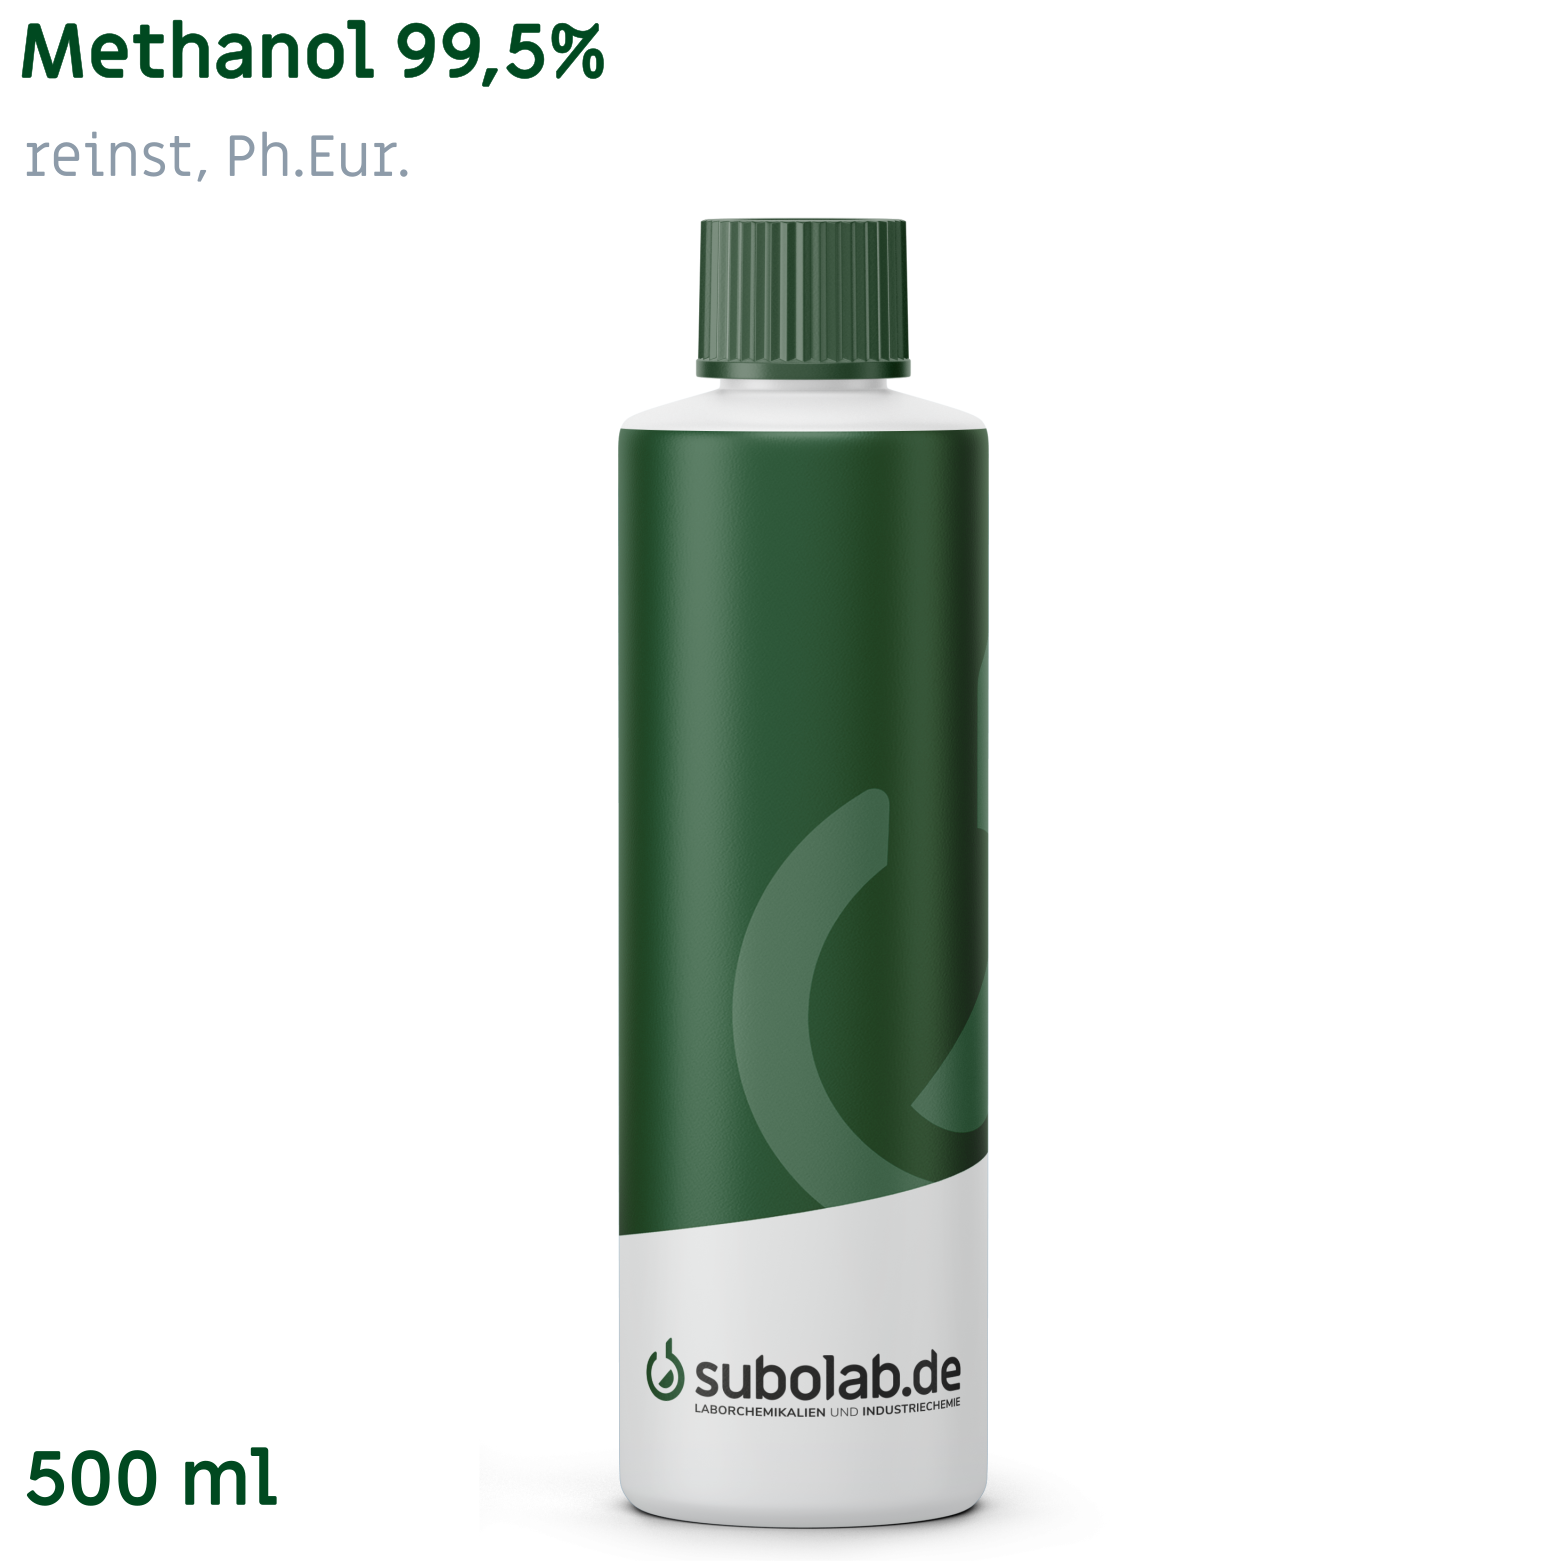 Bild von Methanol 99,5% reinst, Ph.Eur. (500 ml)